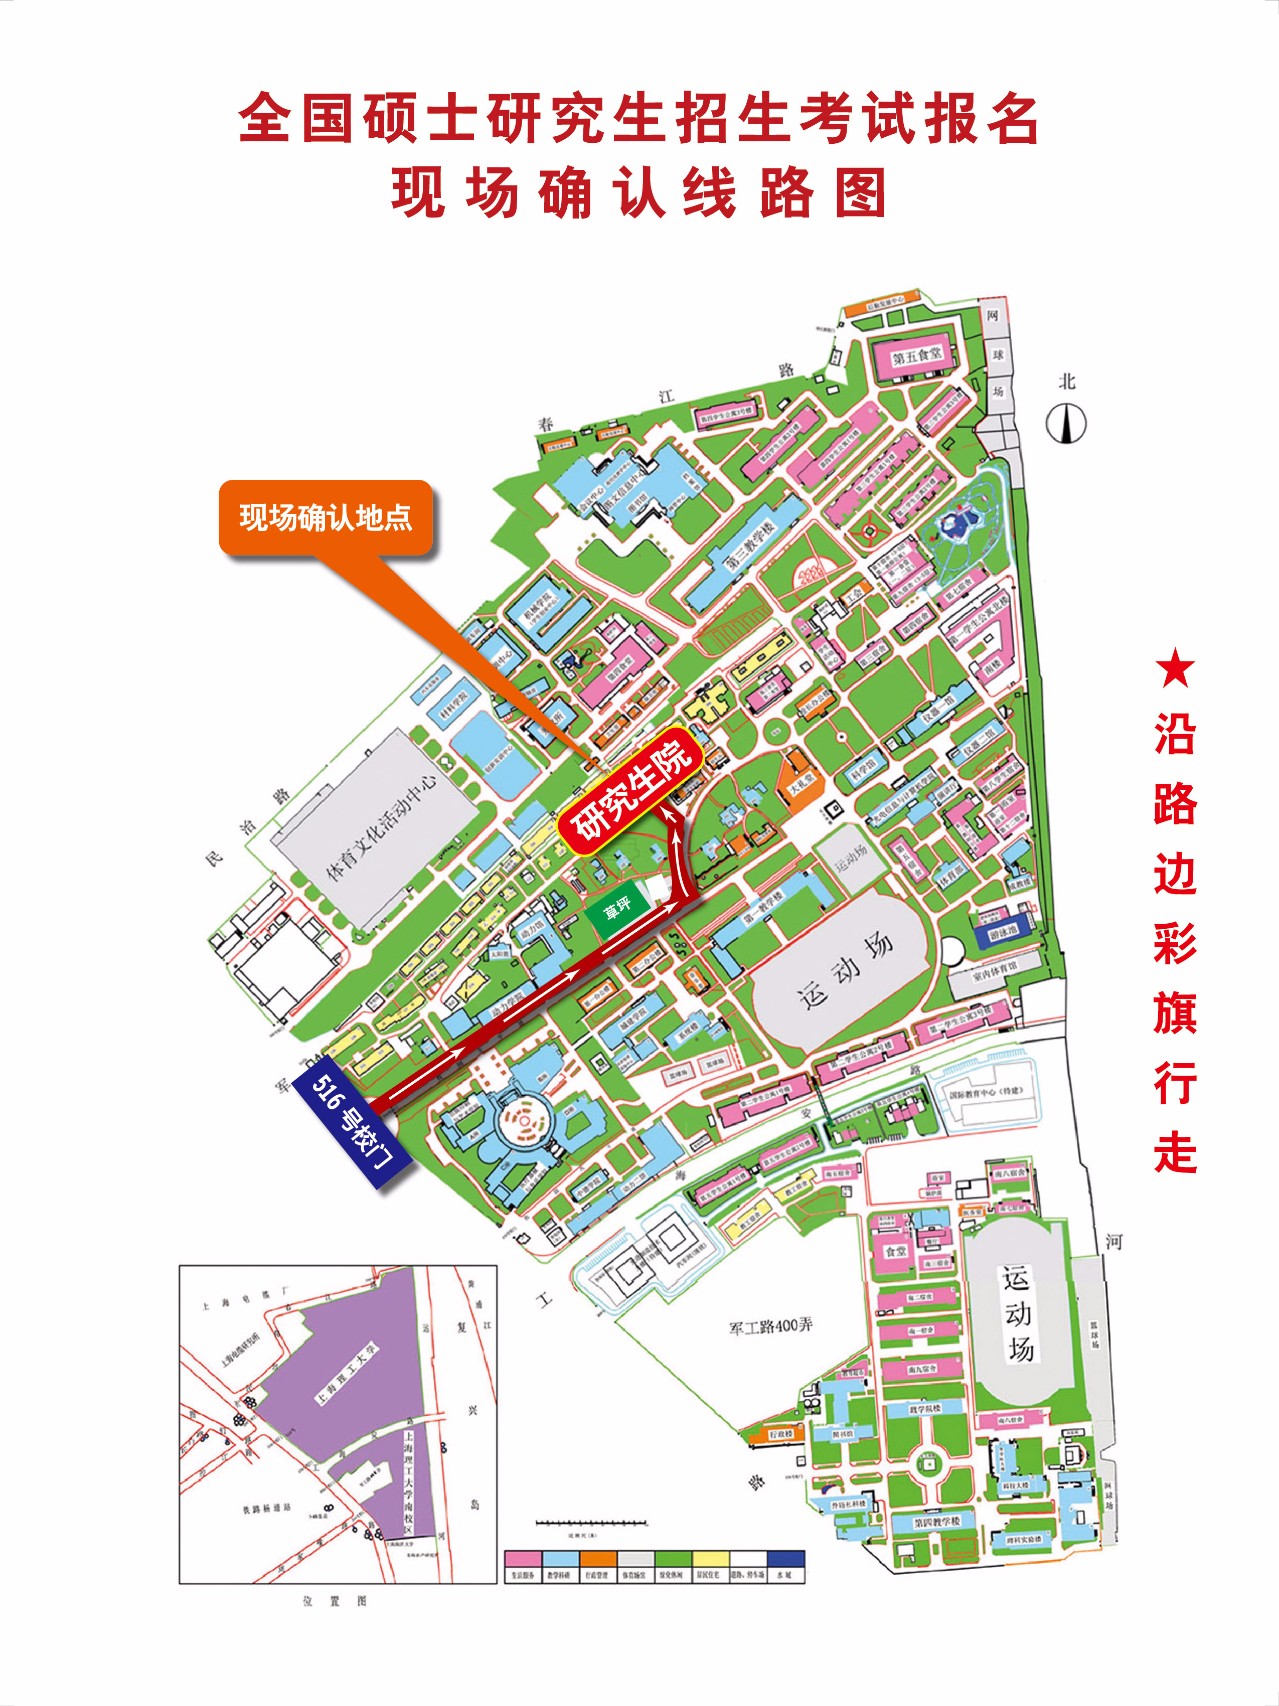 顺着彩旗走,就能走到研究生院)上海理工大学地图(百度地图提供)2017年